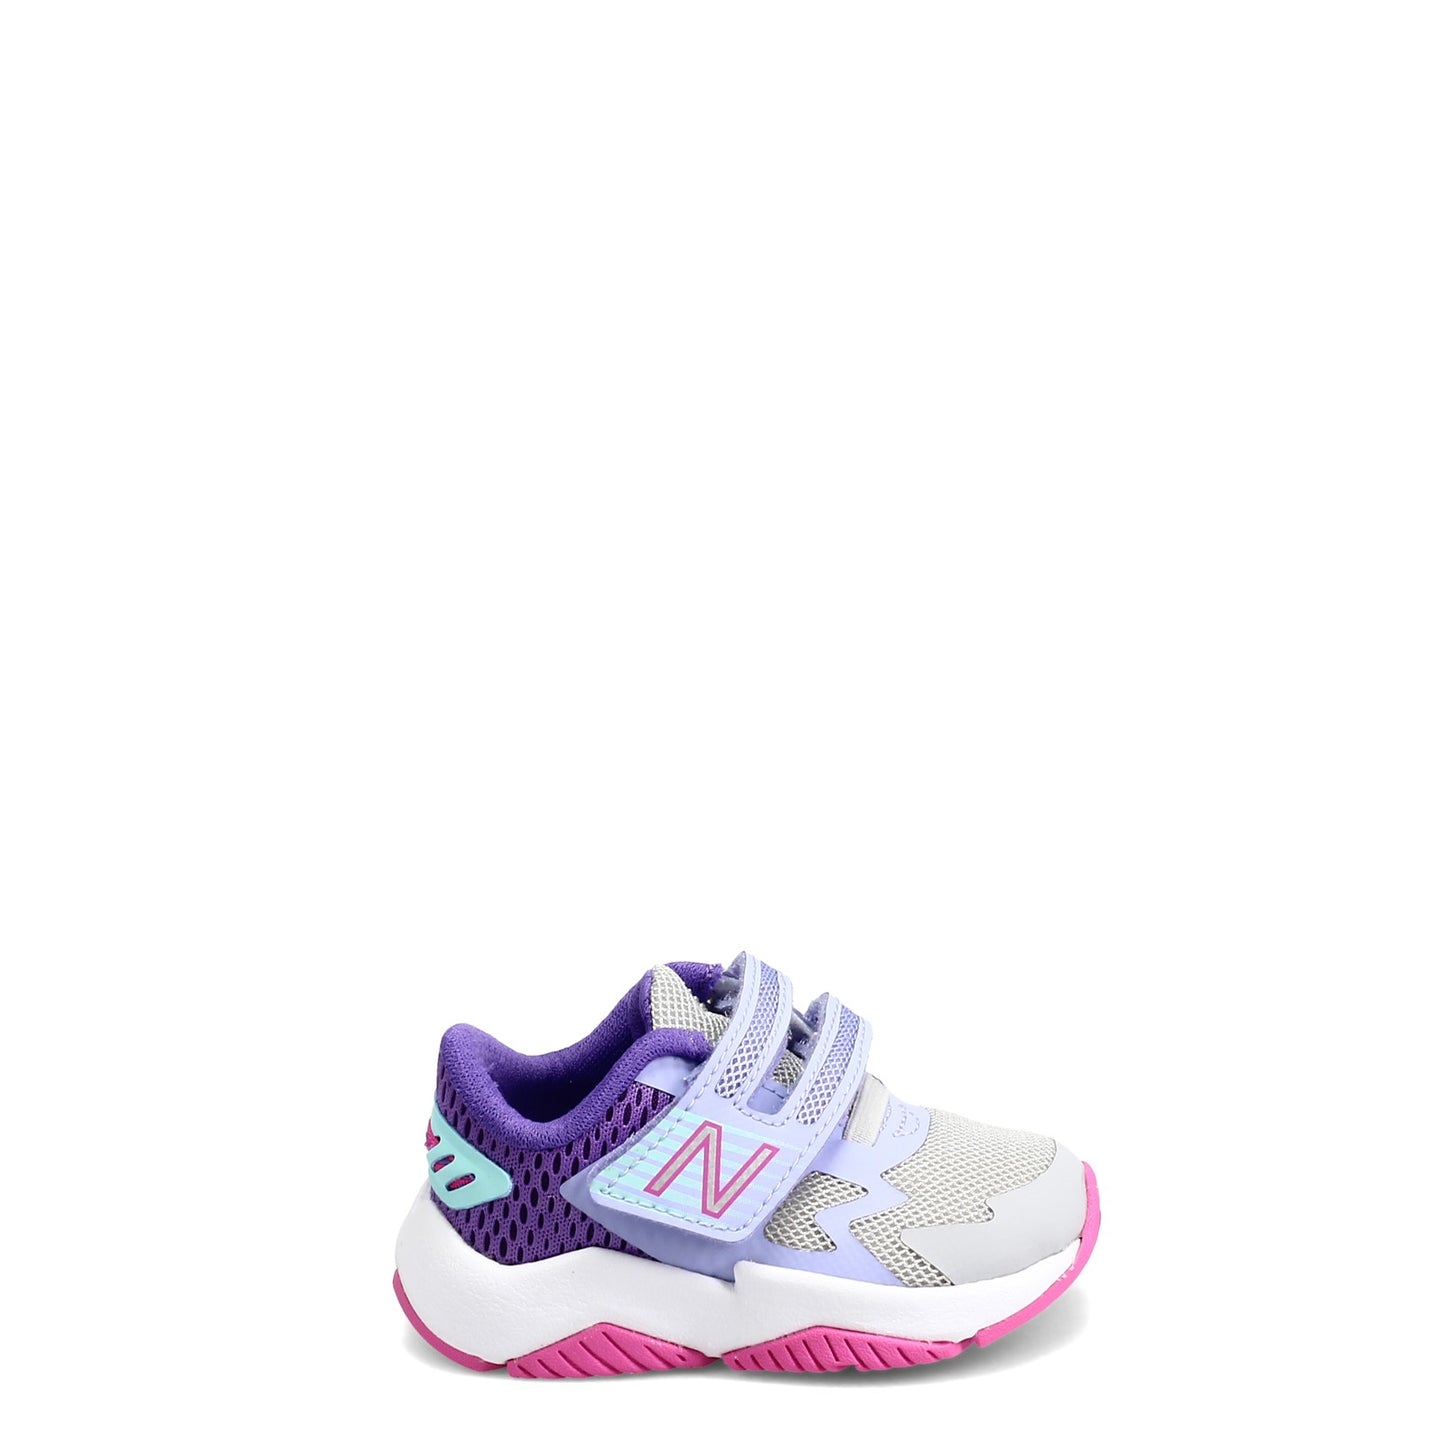 Peltz Shoes  Girl's New Balance Rave Run v1 Sneaker - Infant & Toddler GREY / PURPLE ITRAVBL1